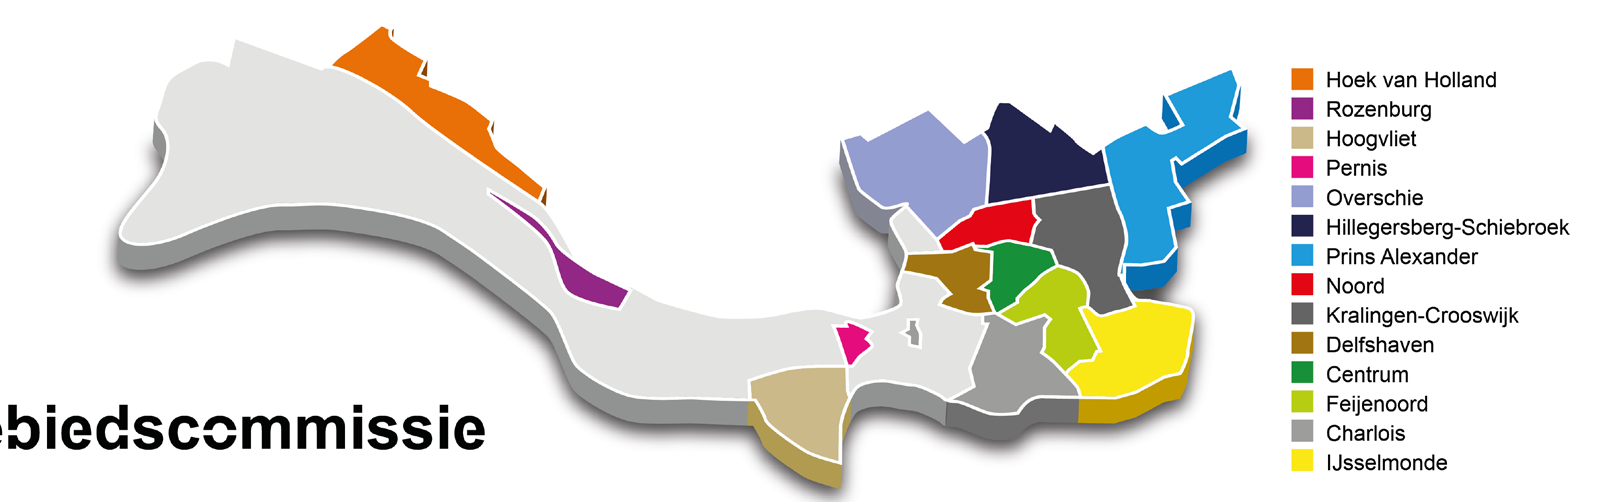 Gebiedscommissie algemeen: 14 gebiedscommissies Belangenbehartiging gebied Verordening op de gebiedscommissies 2014 U bent verkozen tot lid van één van de veertien Rotterdamse gebiedscommissies.